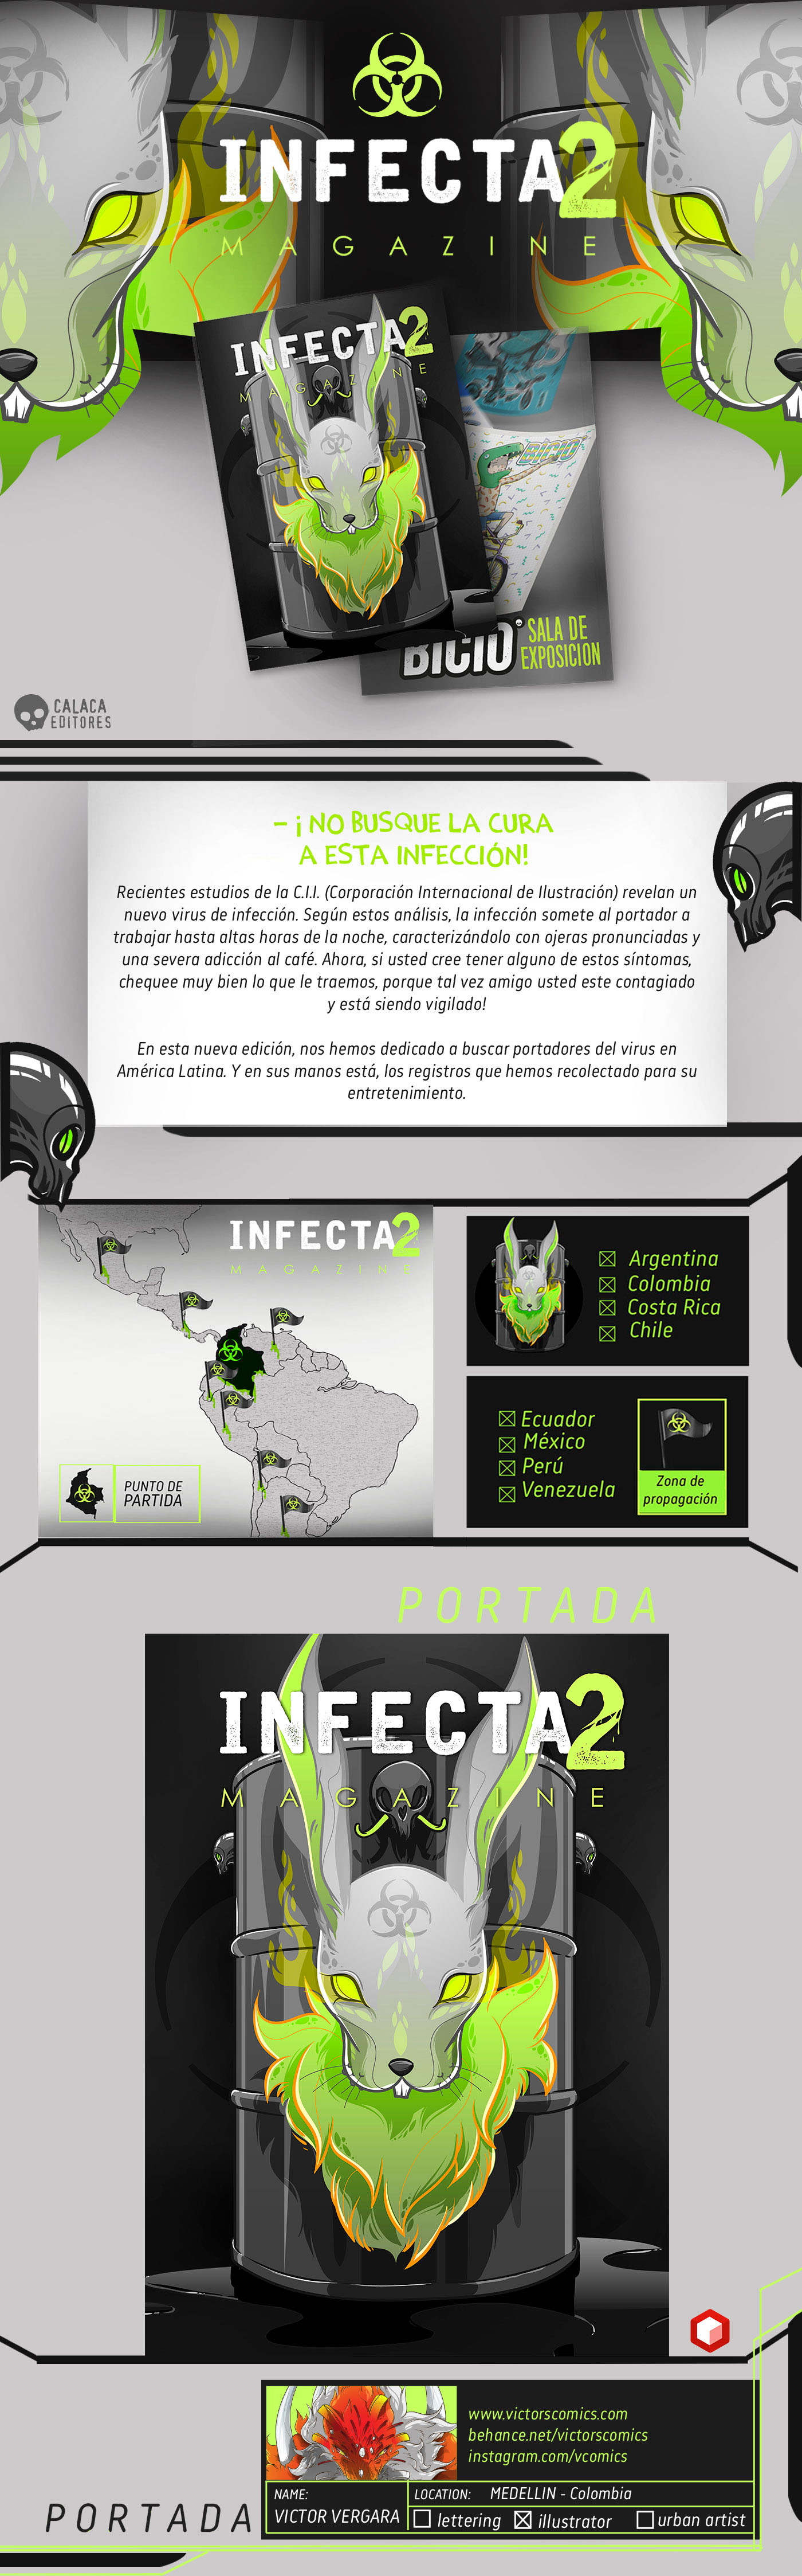 revista magazine ilustradores latinoamerica infectados Infeccion virus